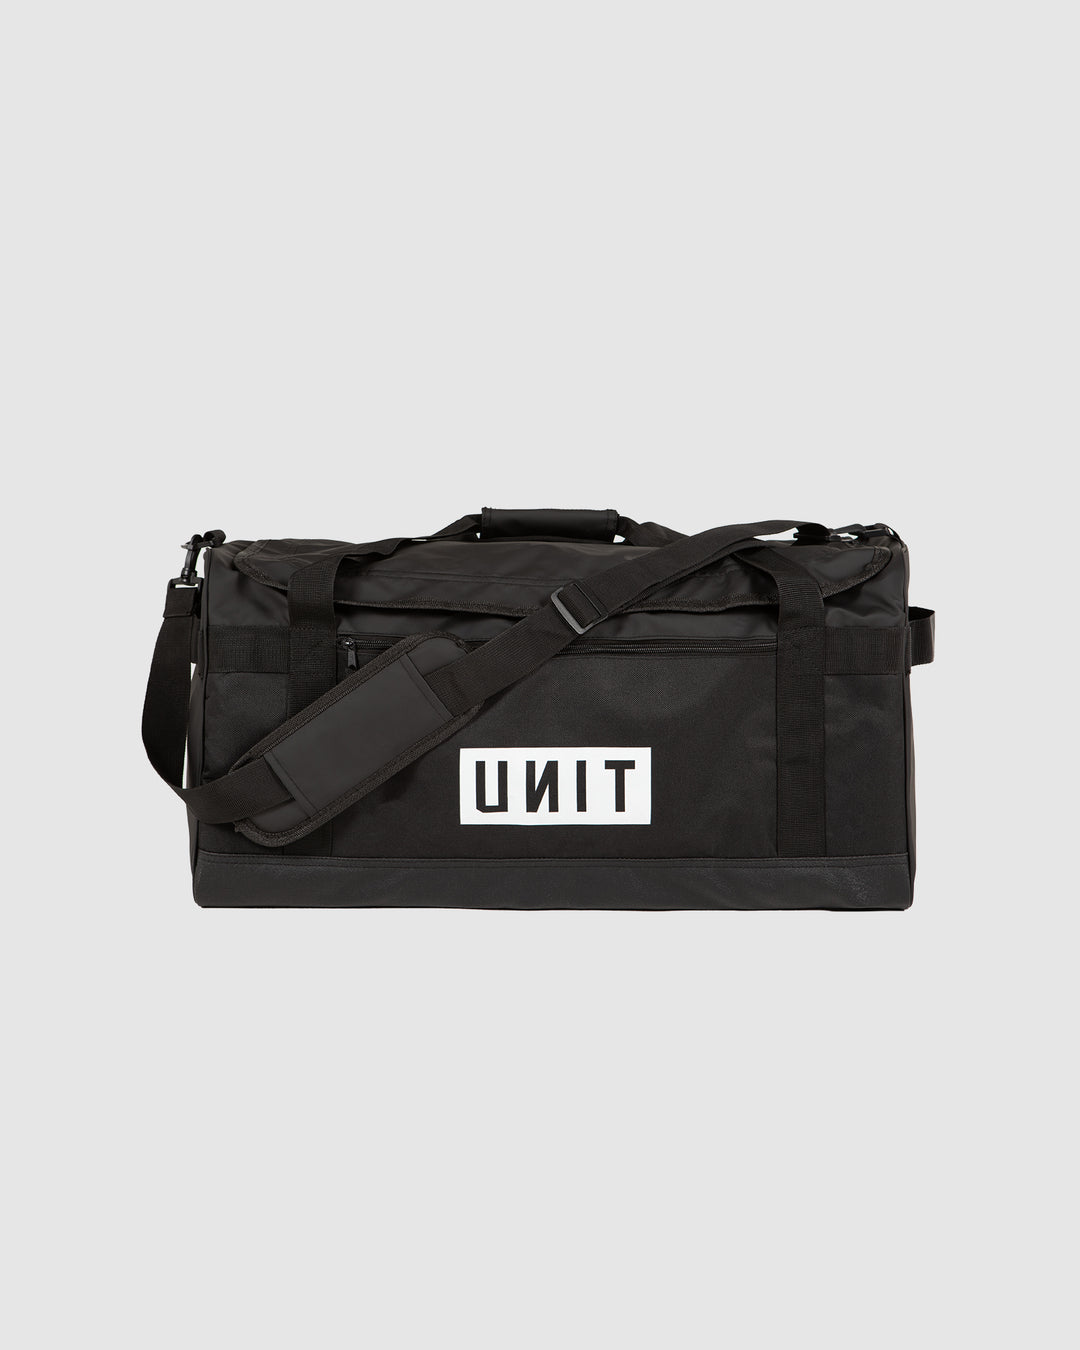 UNIT Stack 58L Medium Duffle Bag